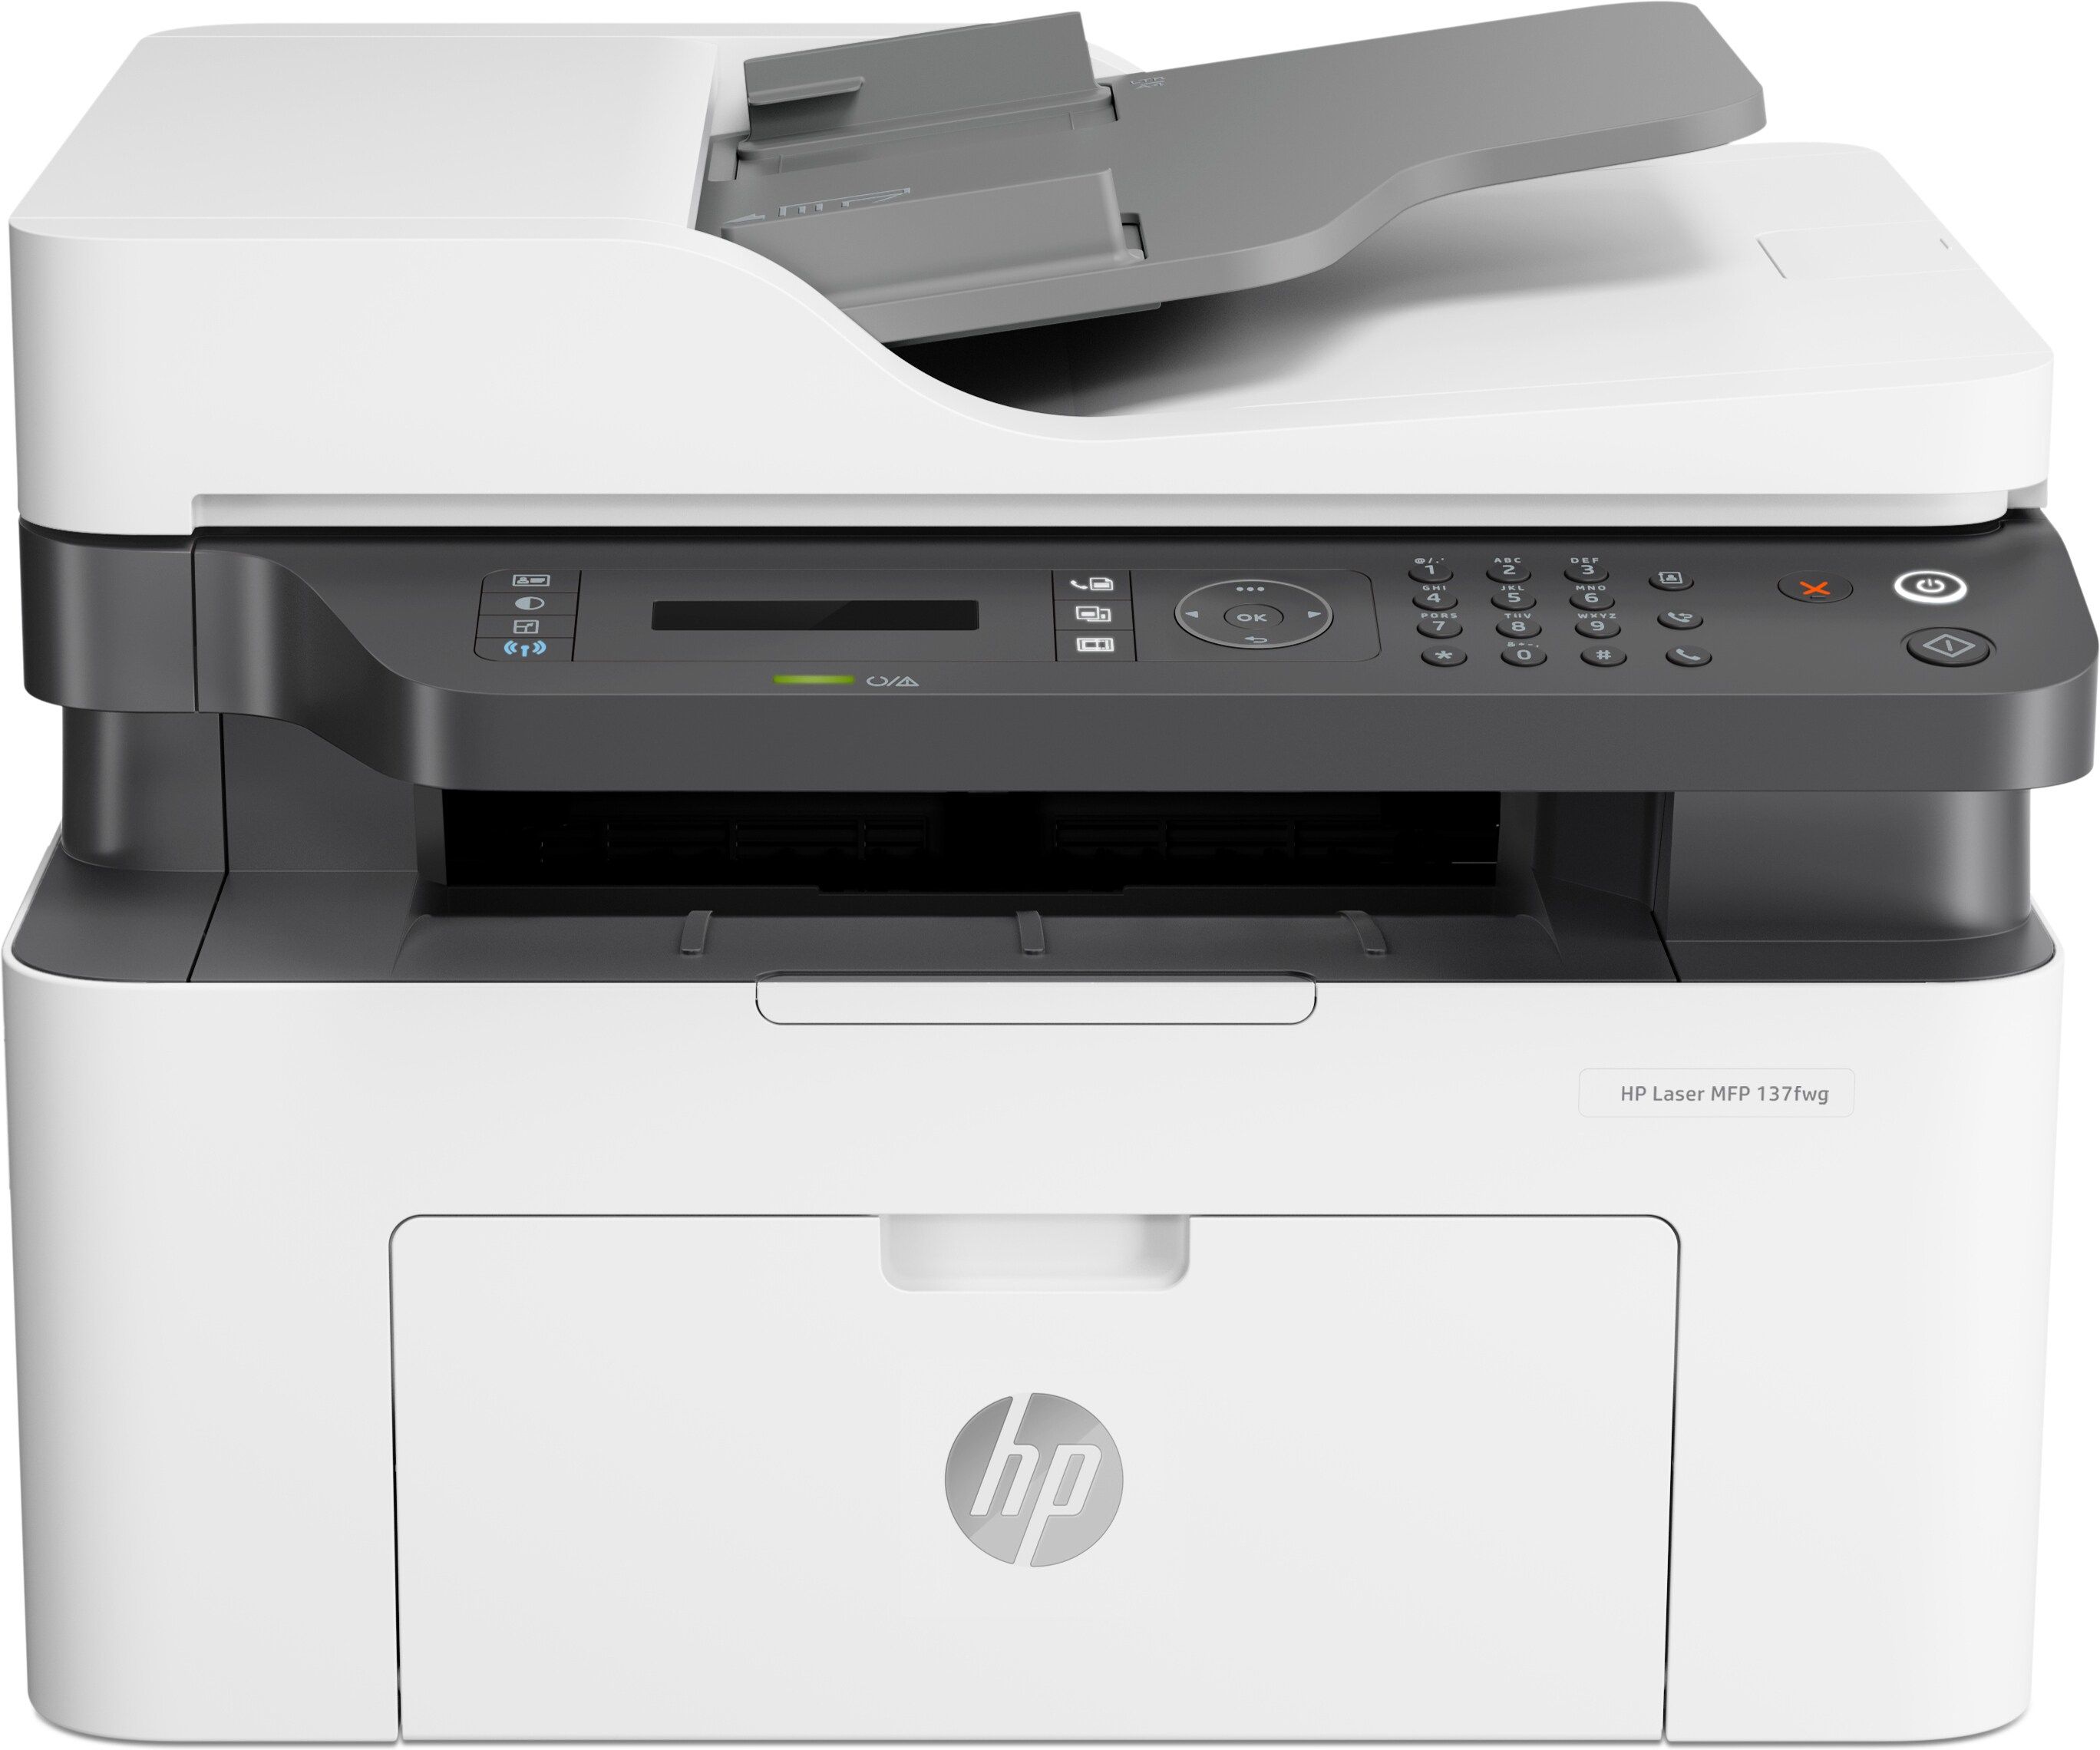 Náplně do tiskárny HP Laser MFP 137wg